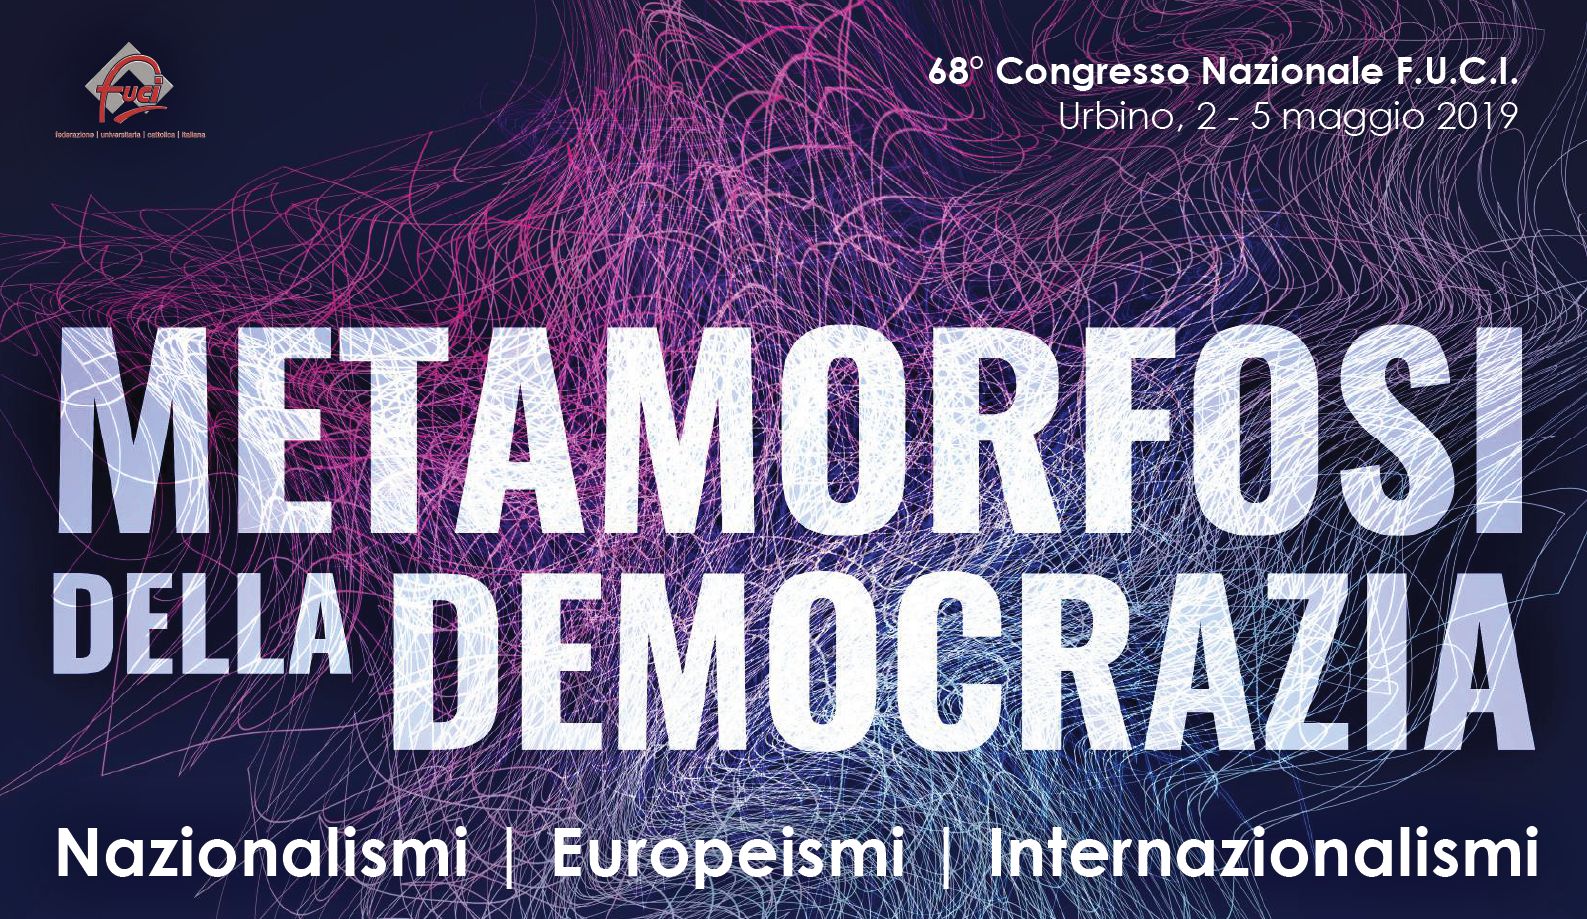 Metamorfosi della democrazia, l’esperienza di Rondine al 68° Congresso Nazionale Fuci